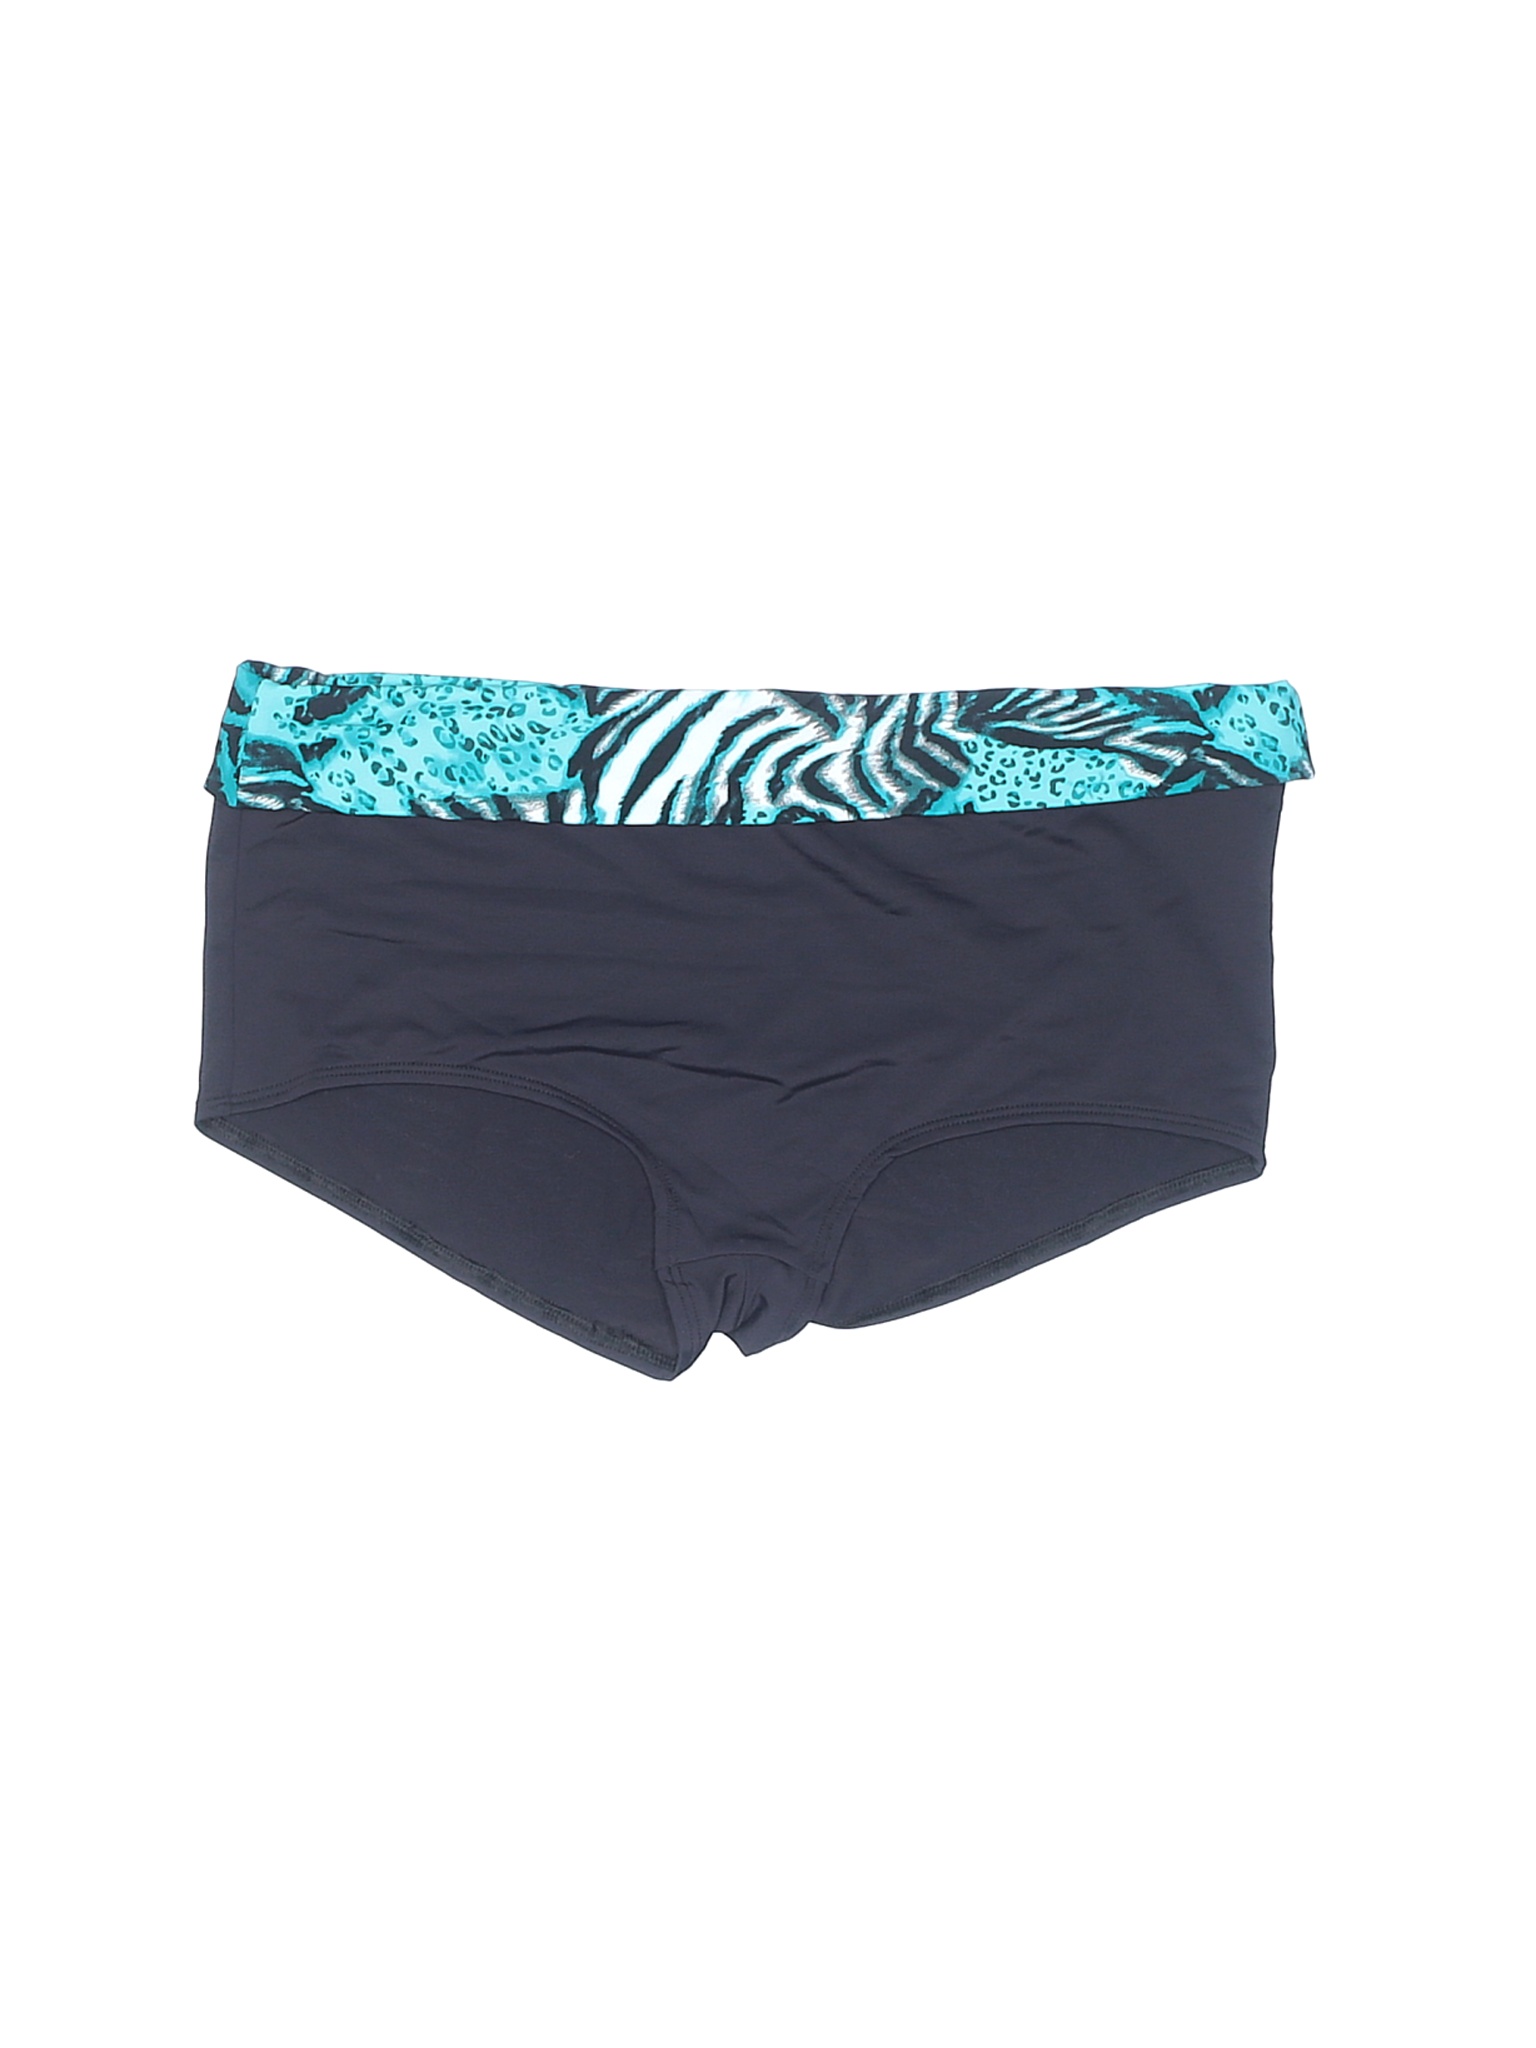 Skye Swimwear Women Blue Swimsuit Bottoms L | eBay